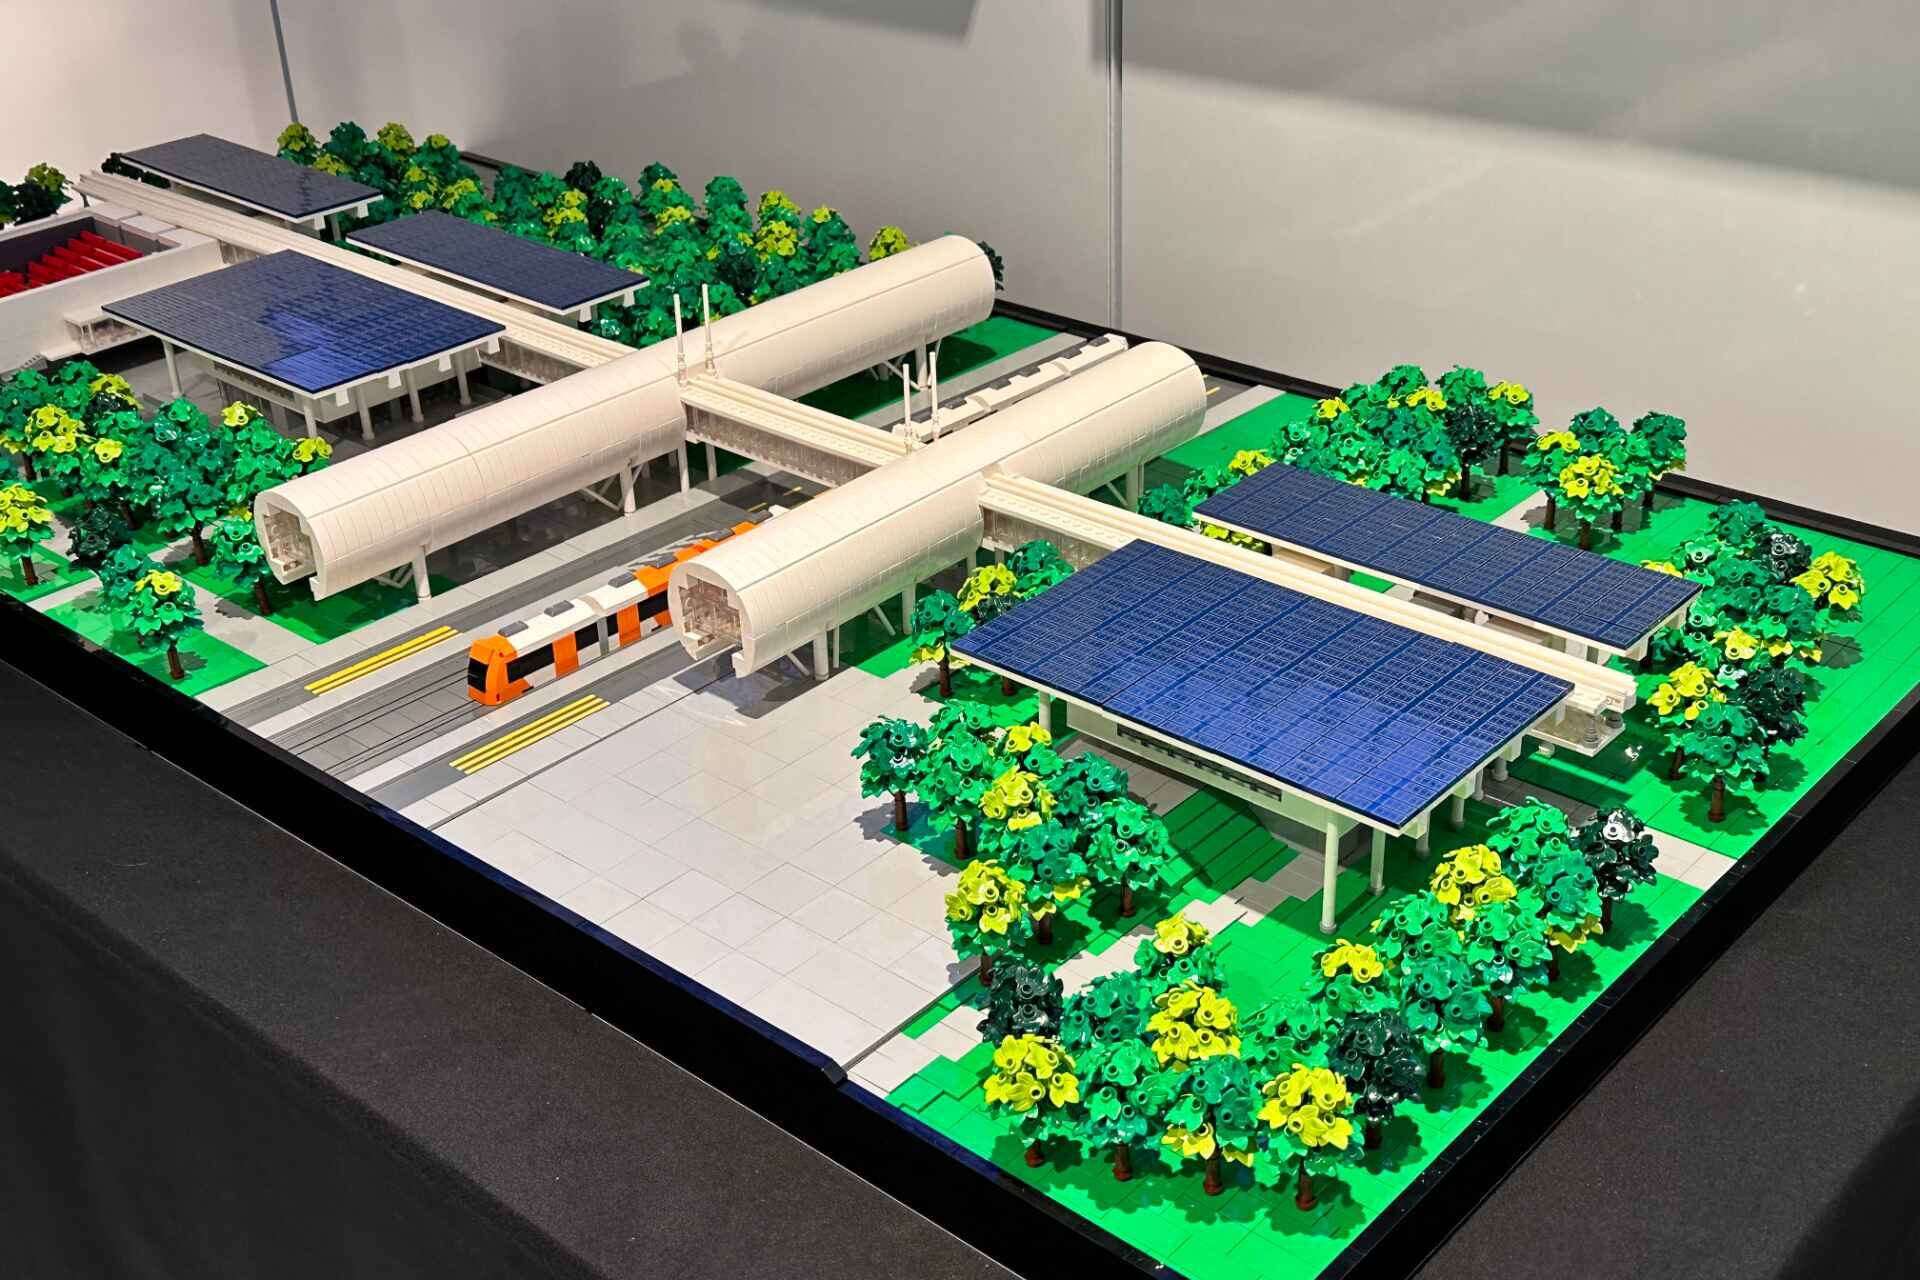 CERN Science Gateway: інфраструктура для распаўсюджвання навукі ў Жэневе